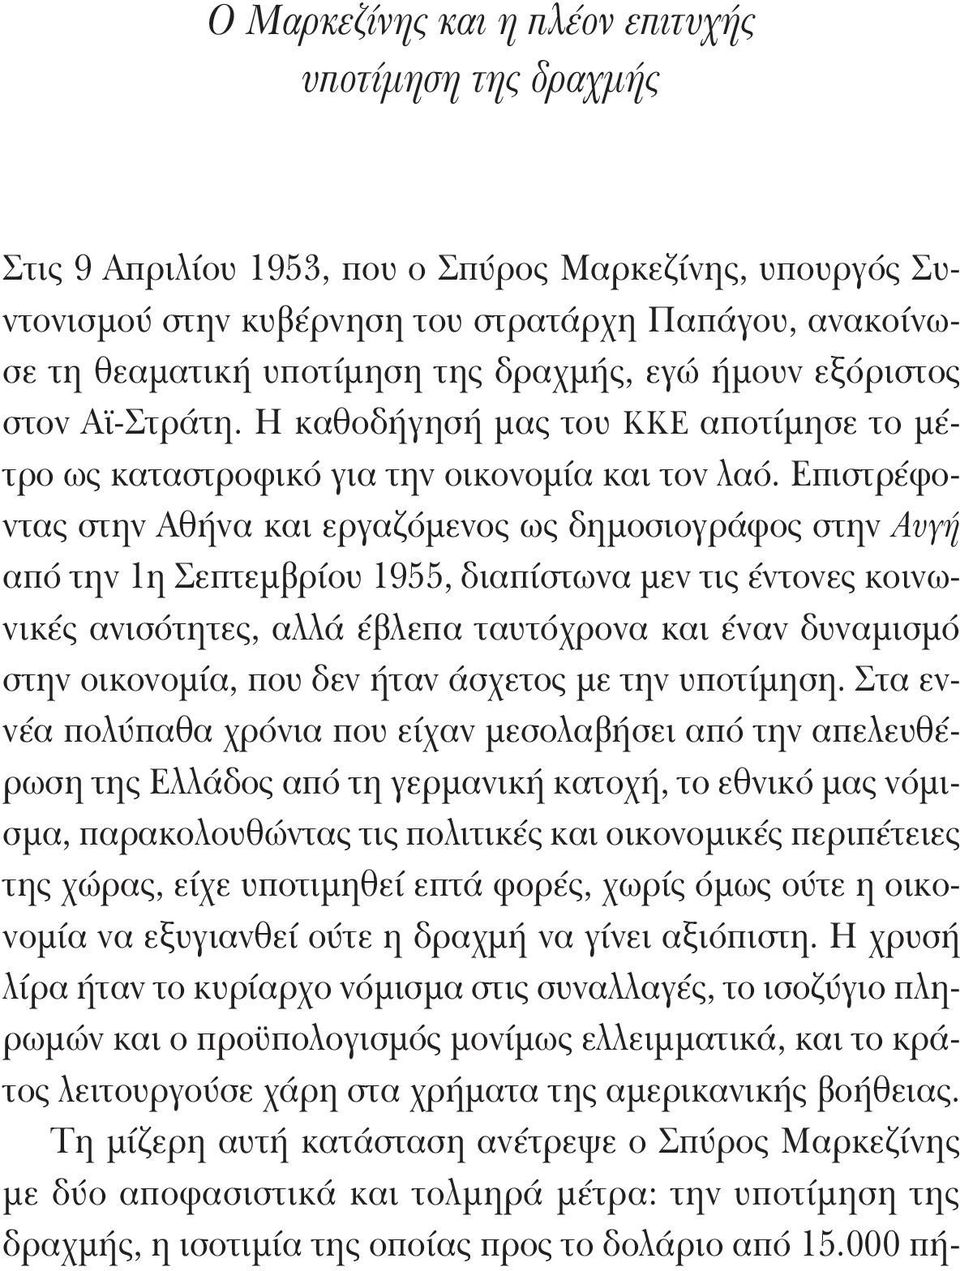 Επιστρέφοντας στην Αθήνα και εργαζόμενος ως δημοσιογράφος στην Αυγή από την 1η Σεπτεμβρίου 1955, διαπίστωνα μεν τις έντονες κοινωνικές ανισότητες, αλλά έβλεπα ταυτόχρονα και έναν δυναμισμό στην